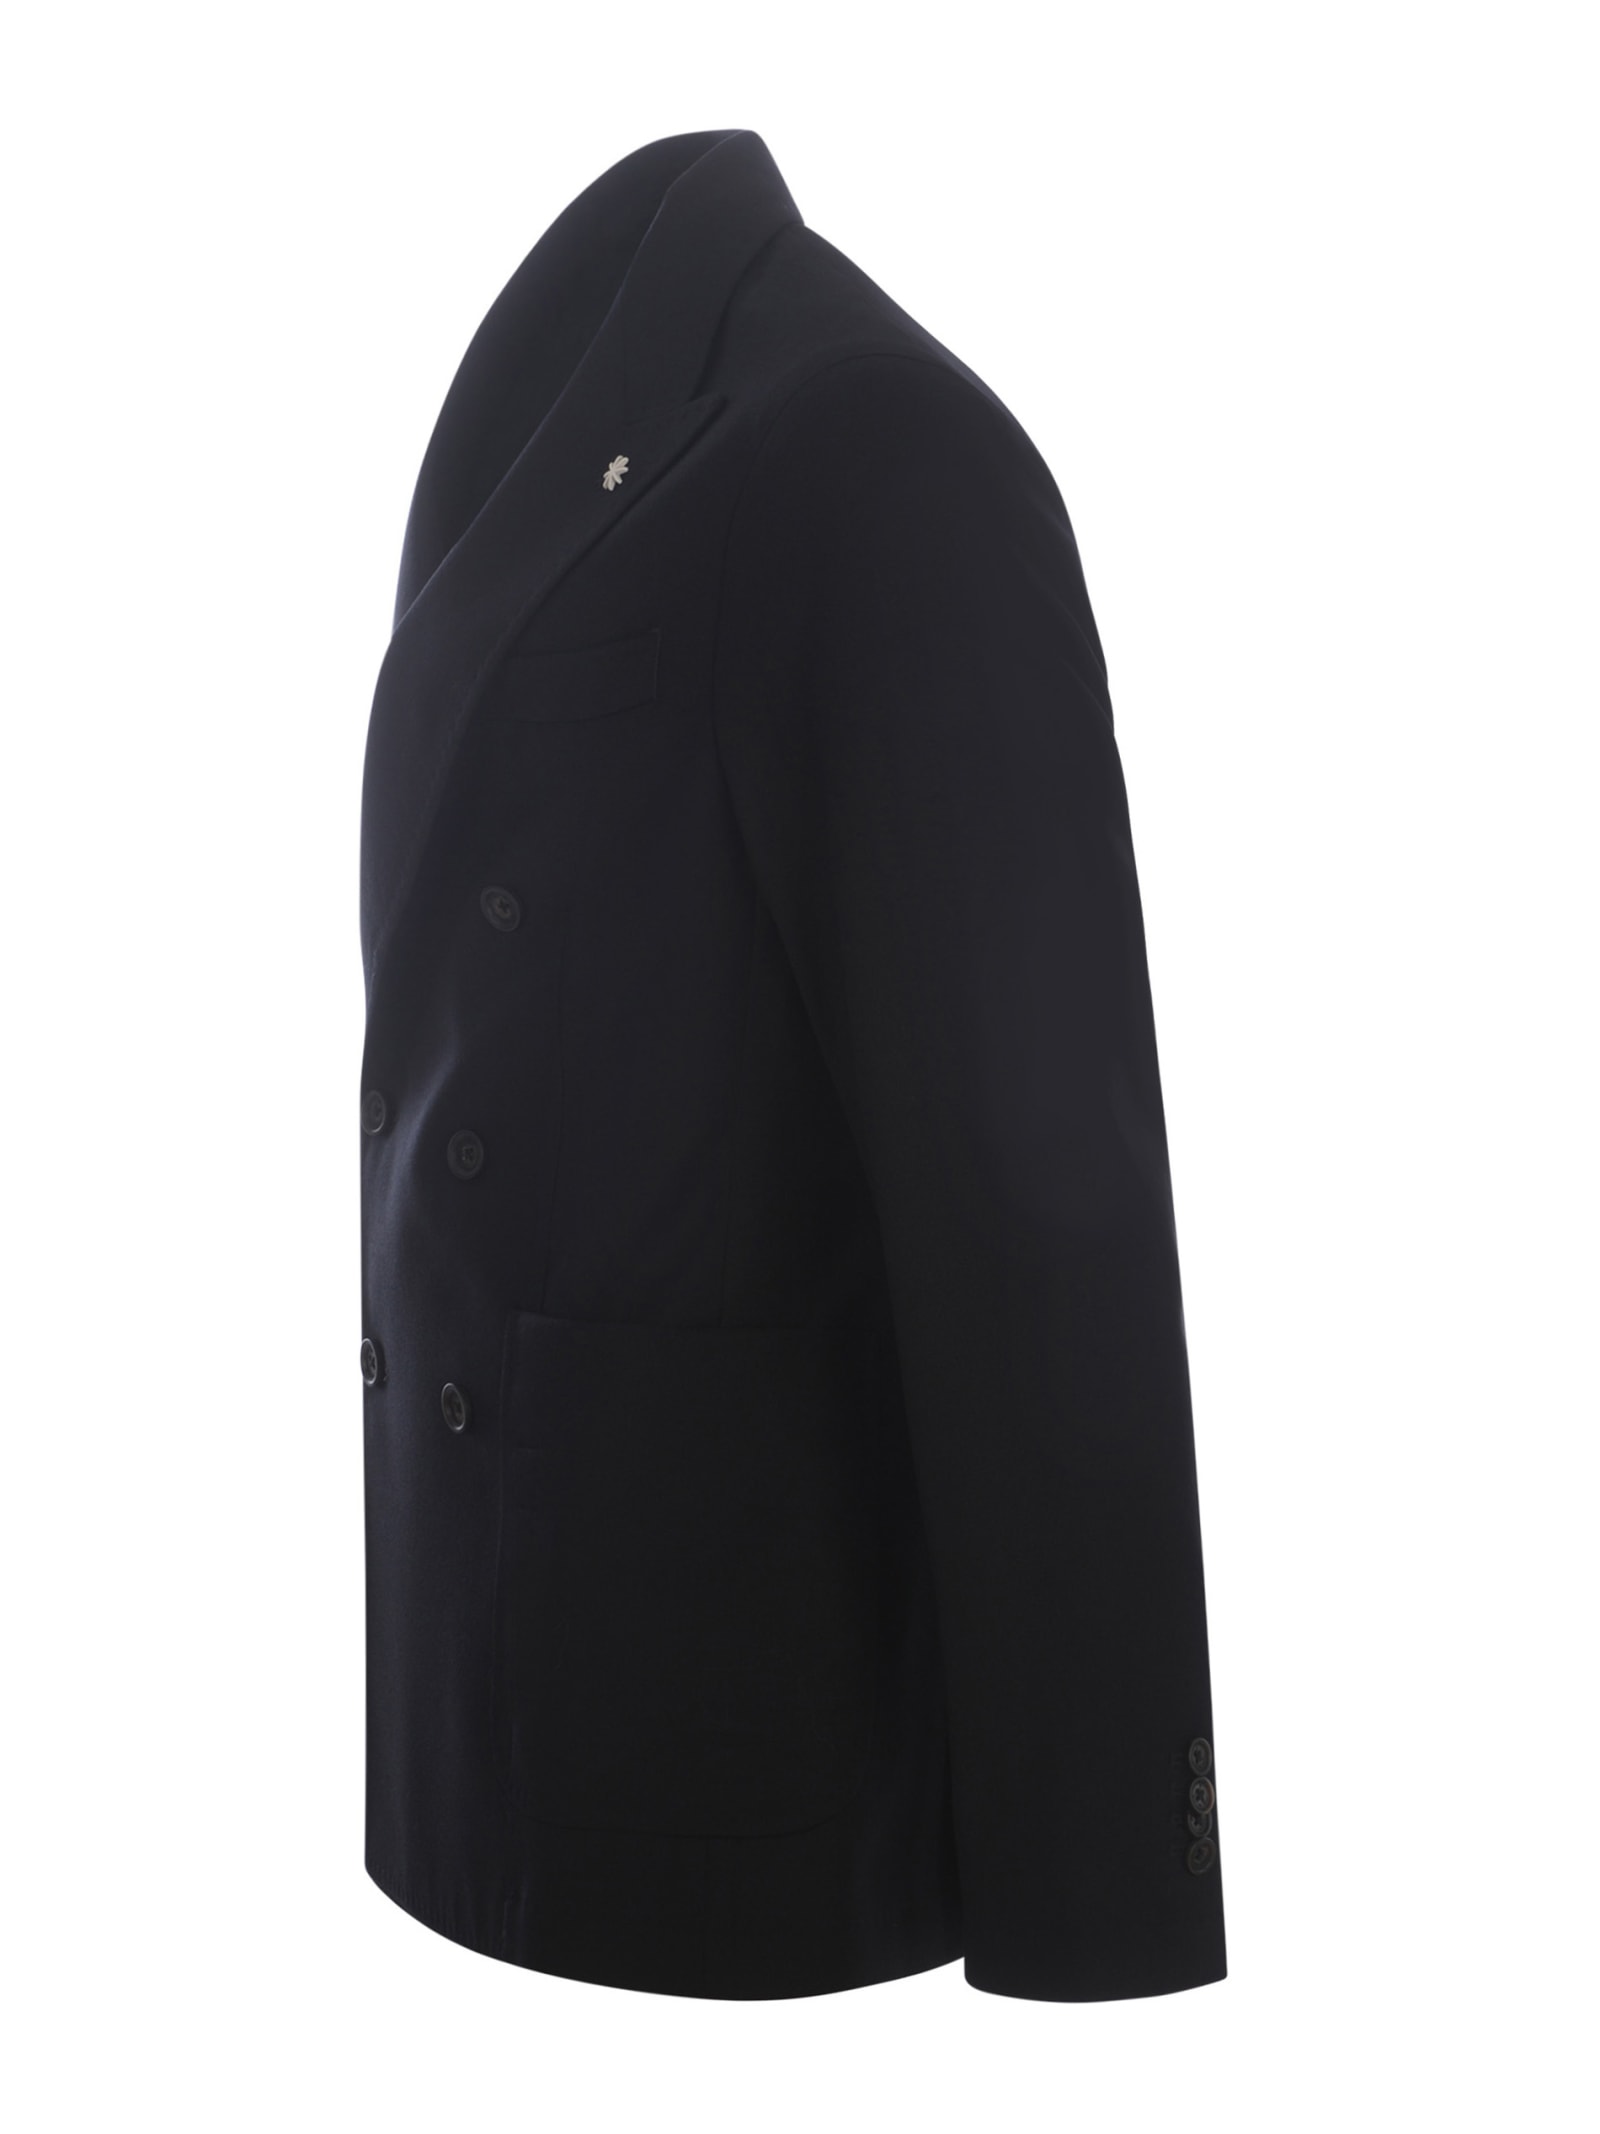 Shop Manuel Ritz Double-breasted  Wool Jacket In Black